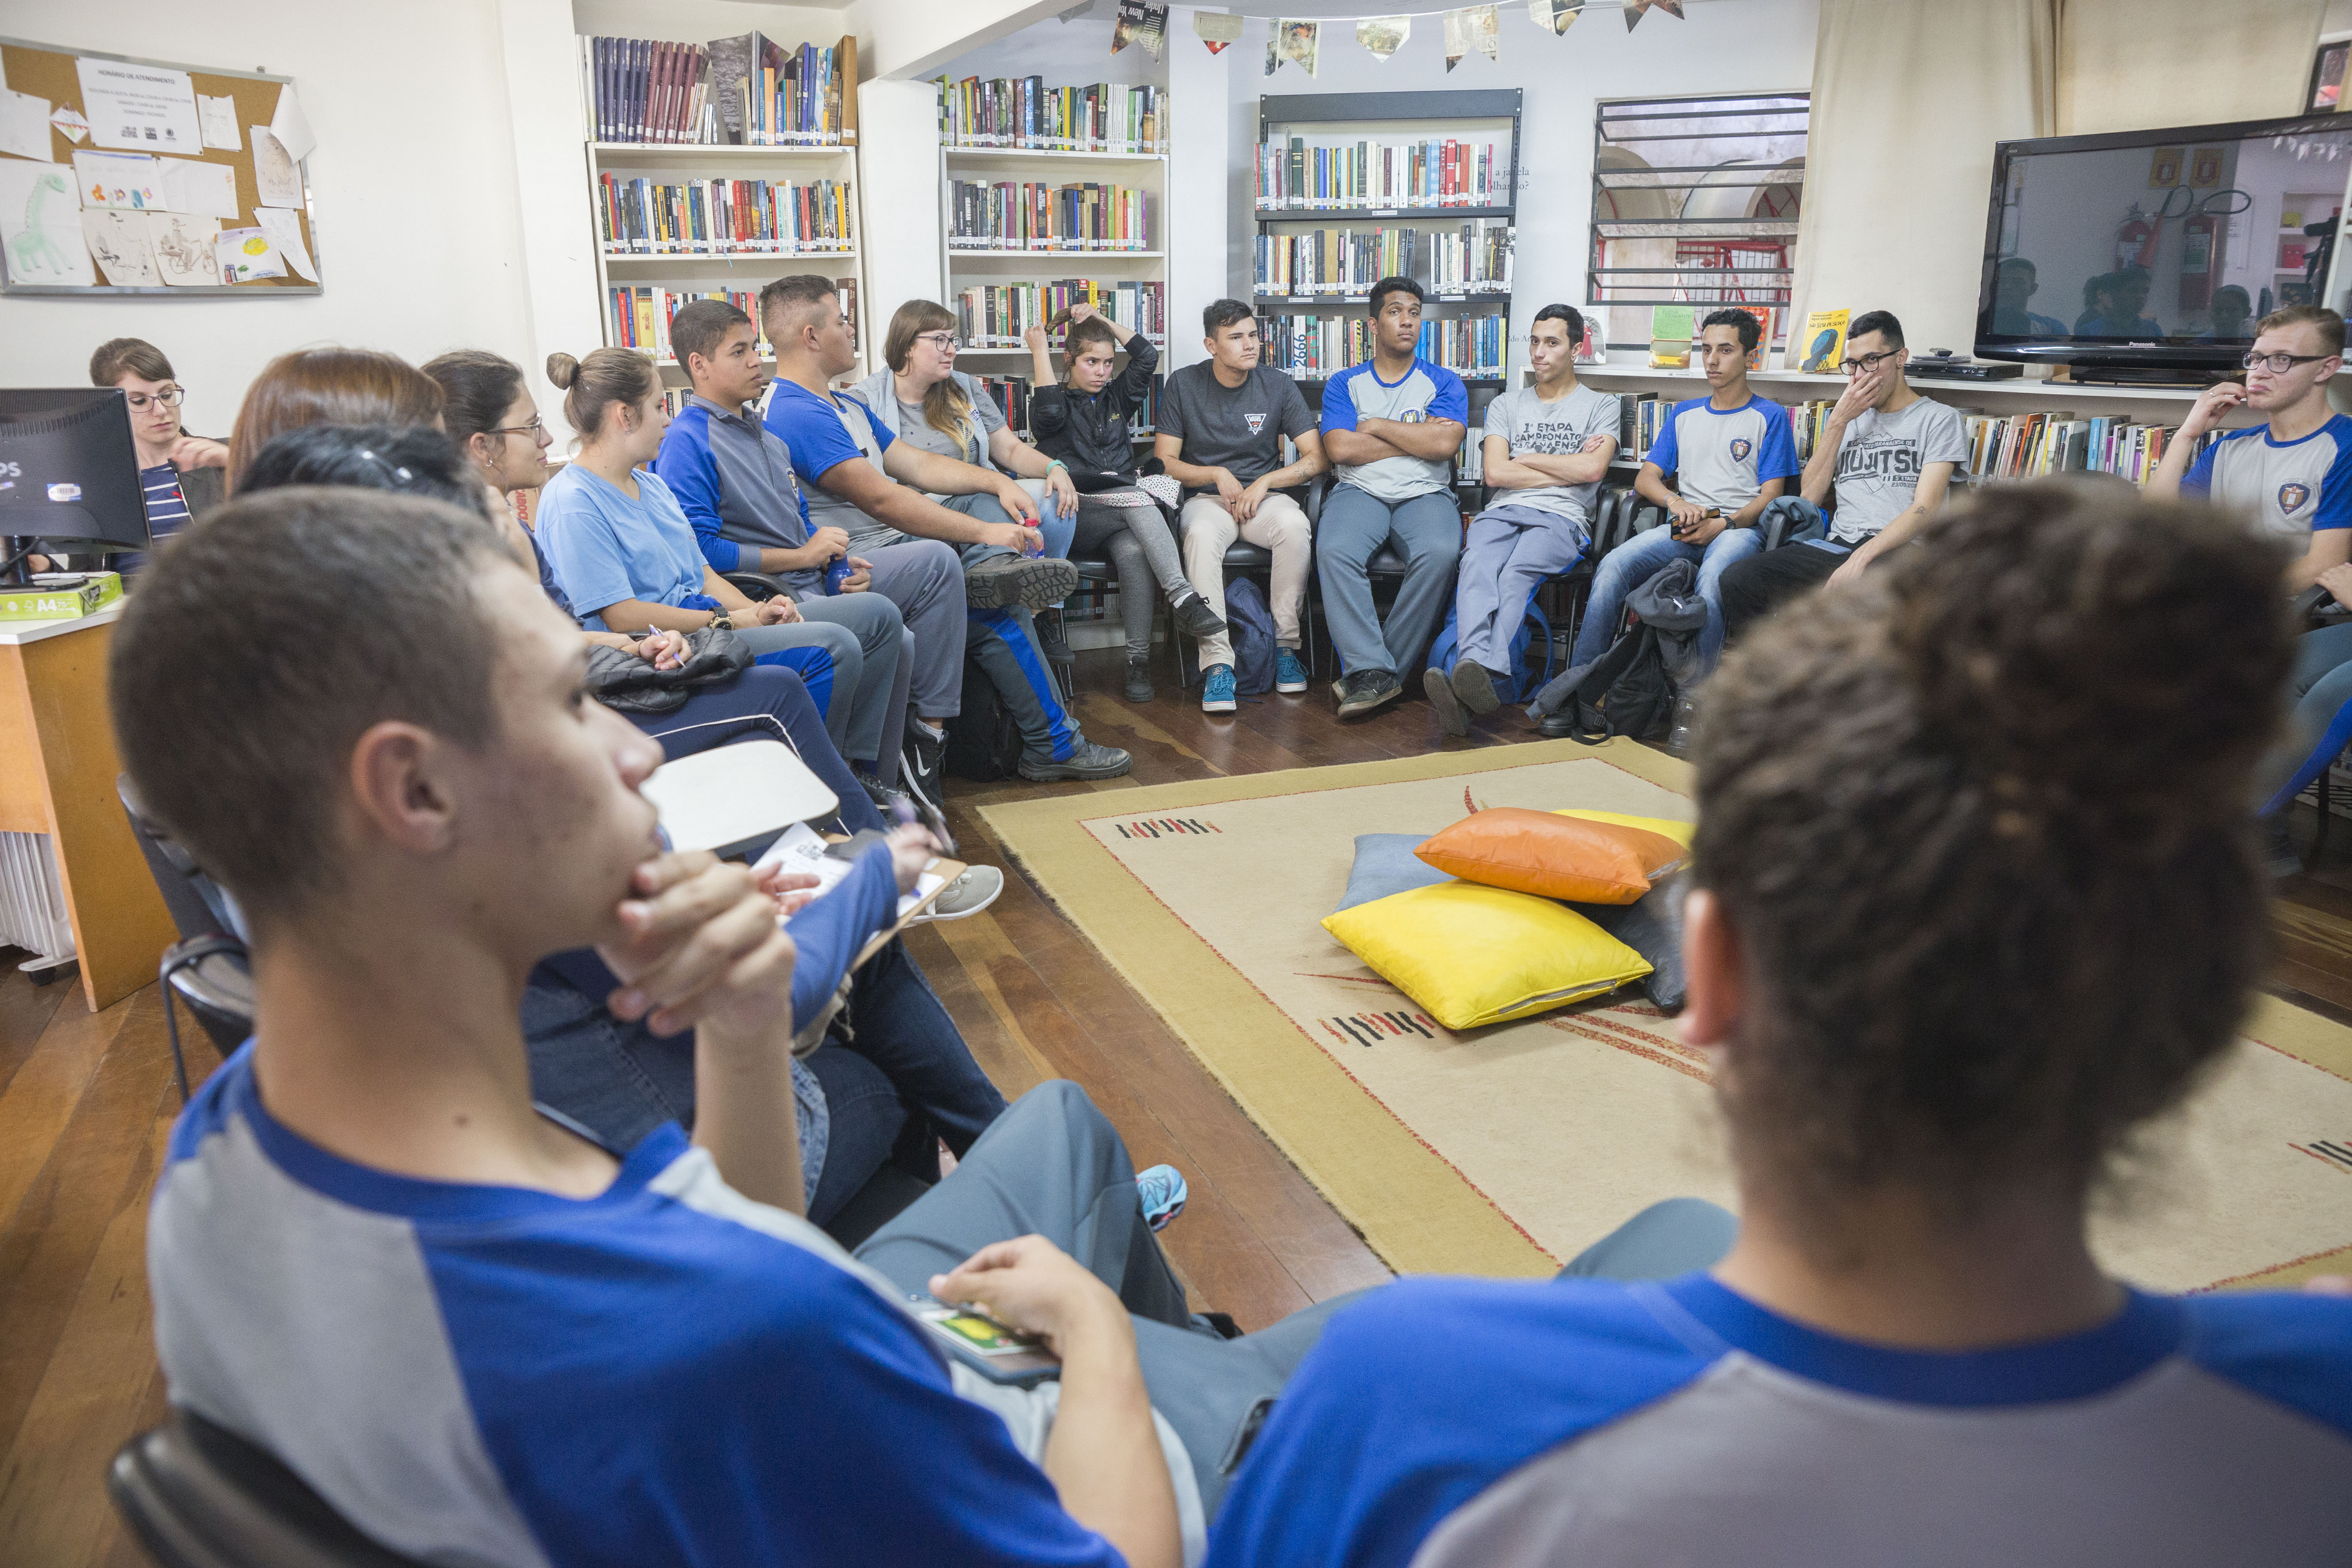 Clubes da Leitura abordam livros exigidos no vestibular da UFPR.
Foto: Valdecir Galor/SMCS